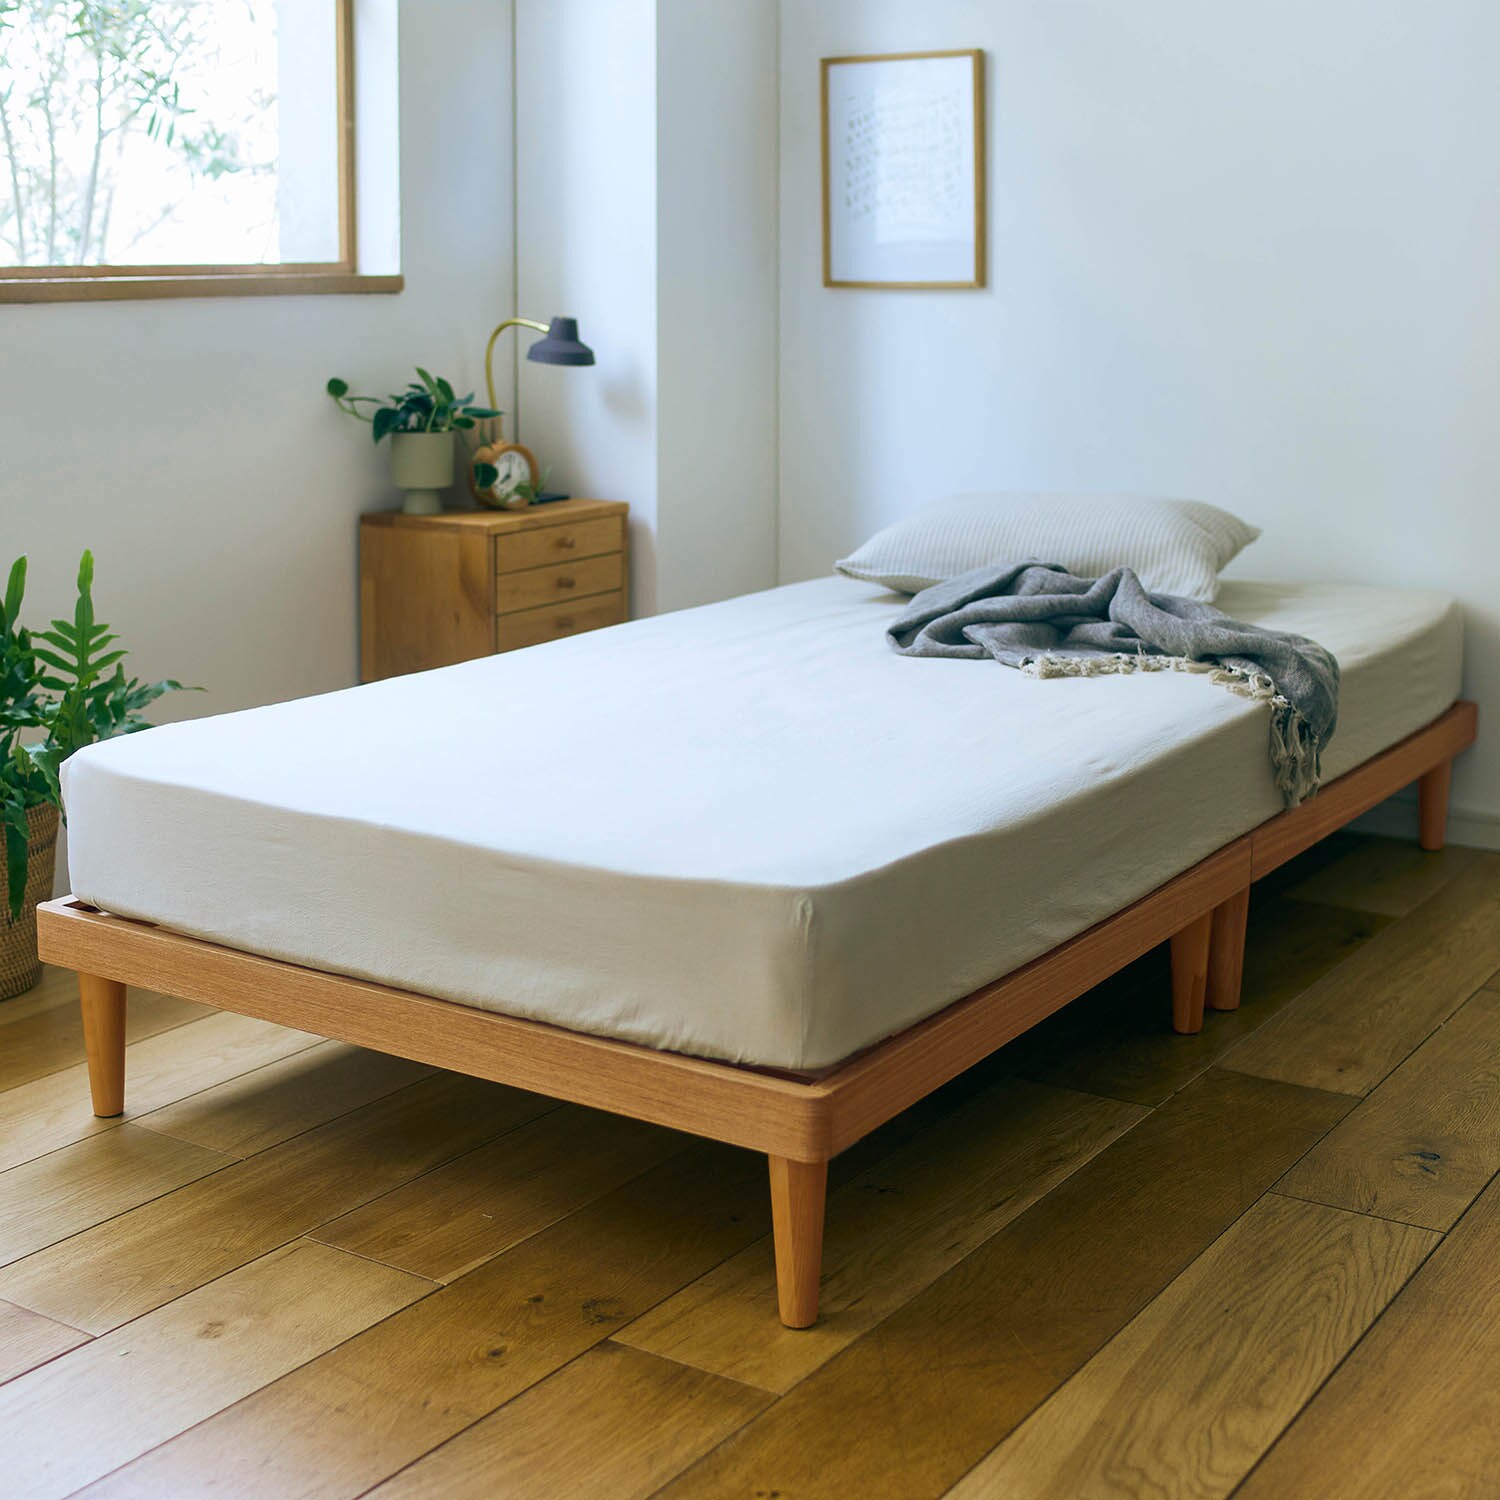 【BELLE MAISON DAYS】【大型商品送料無料】 5分で組み立てられる木製すのこベッド